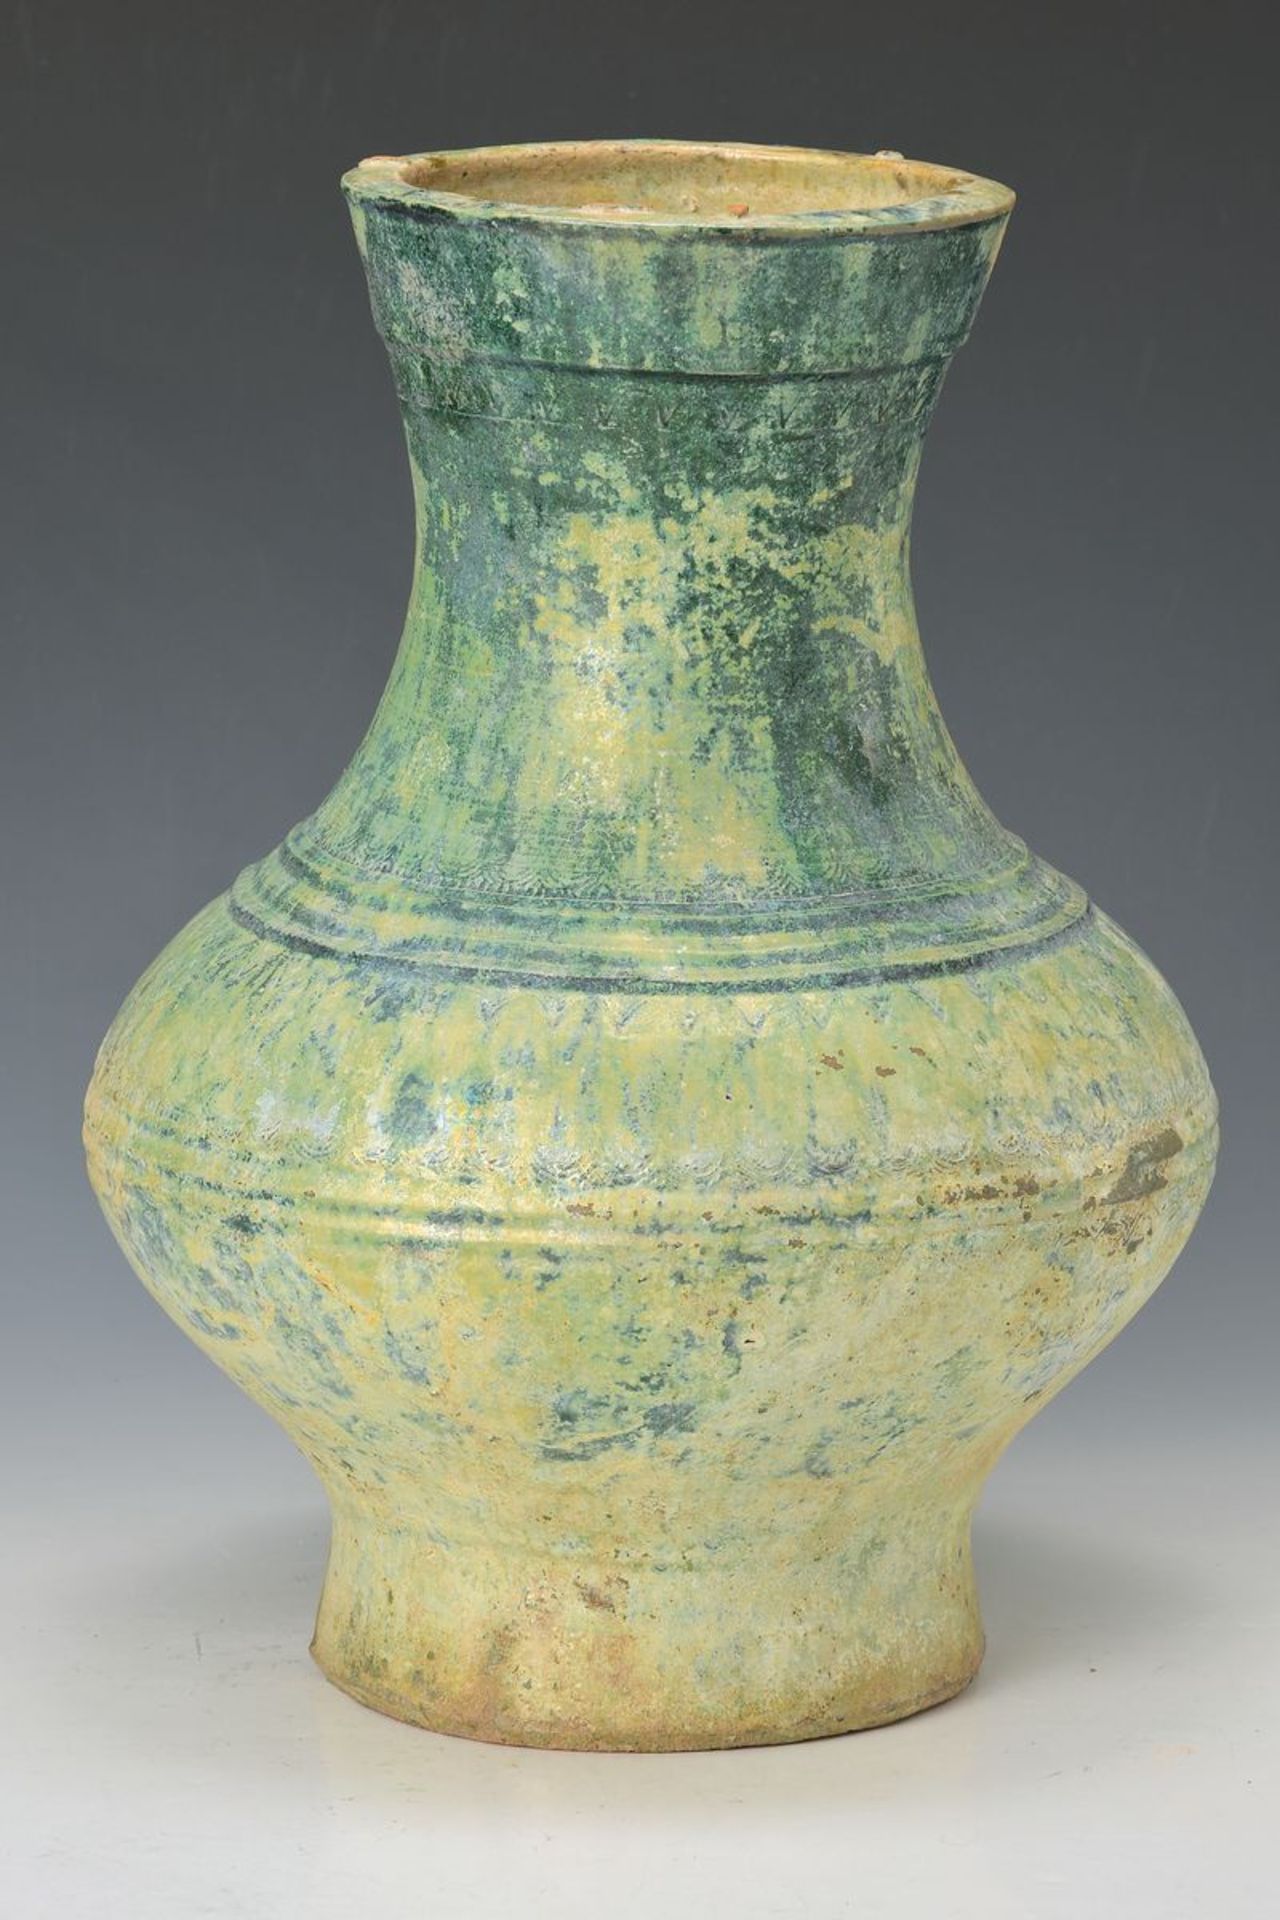 Keramikgefäß, China, 12./13. Jh., elegante bauchige Form, im Dreiertakt gerillt, grüne irisierende